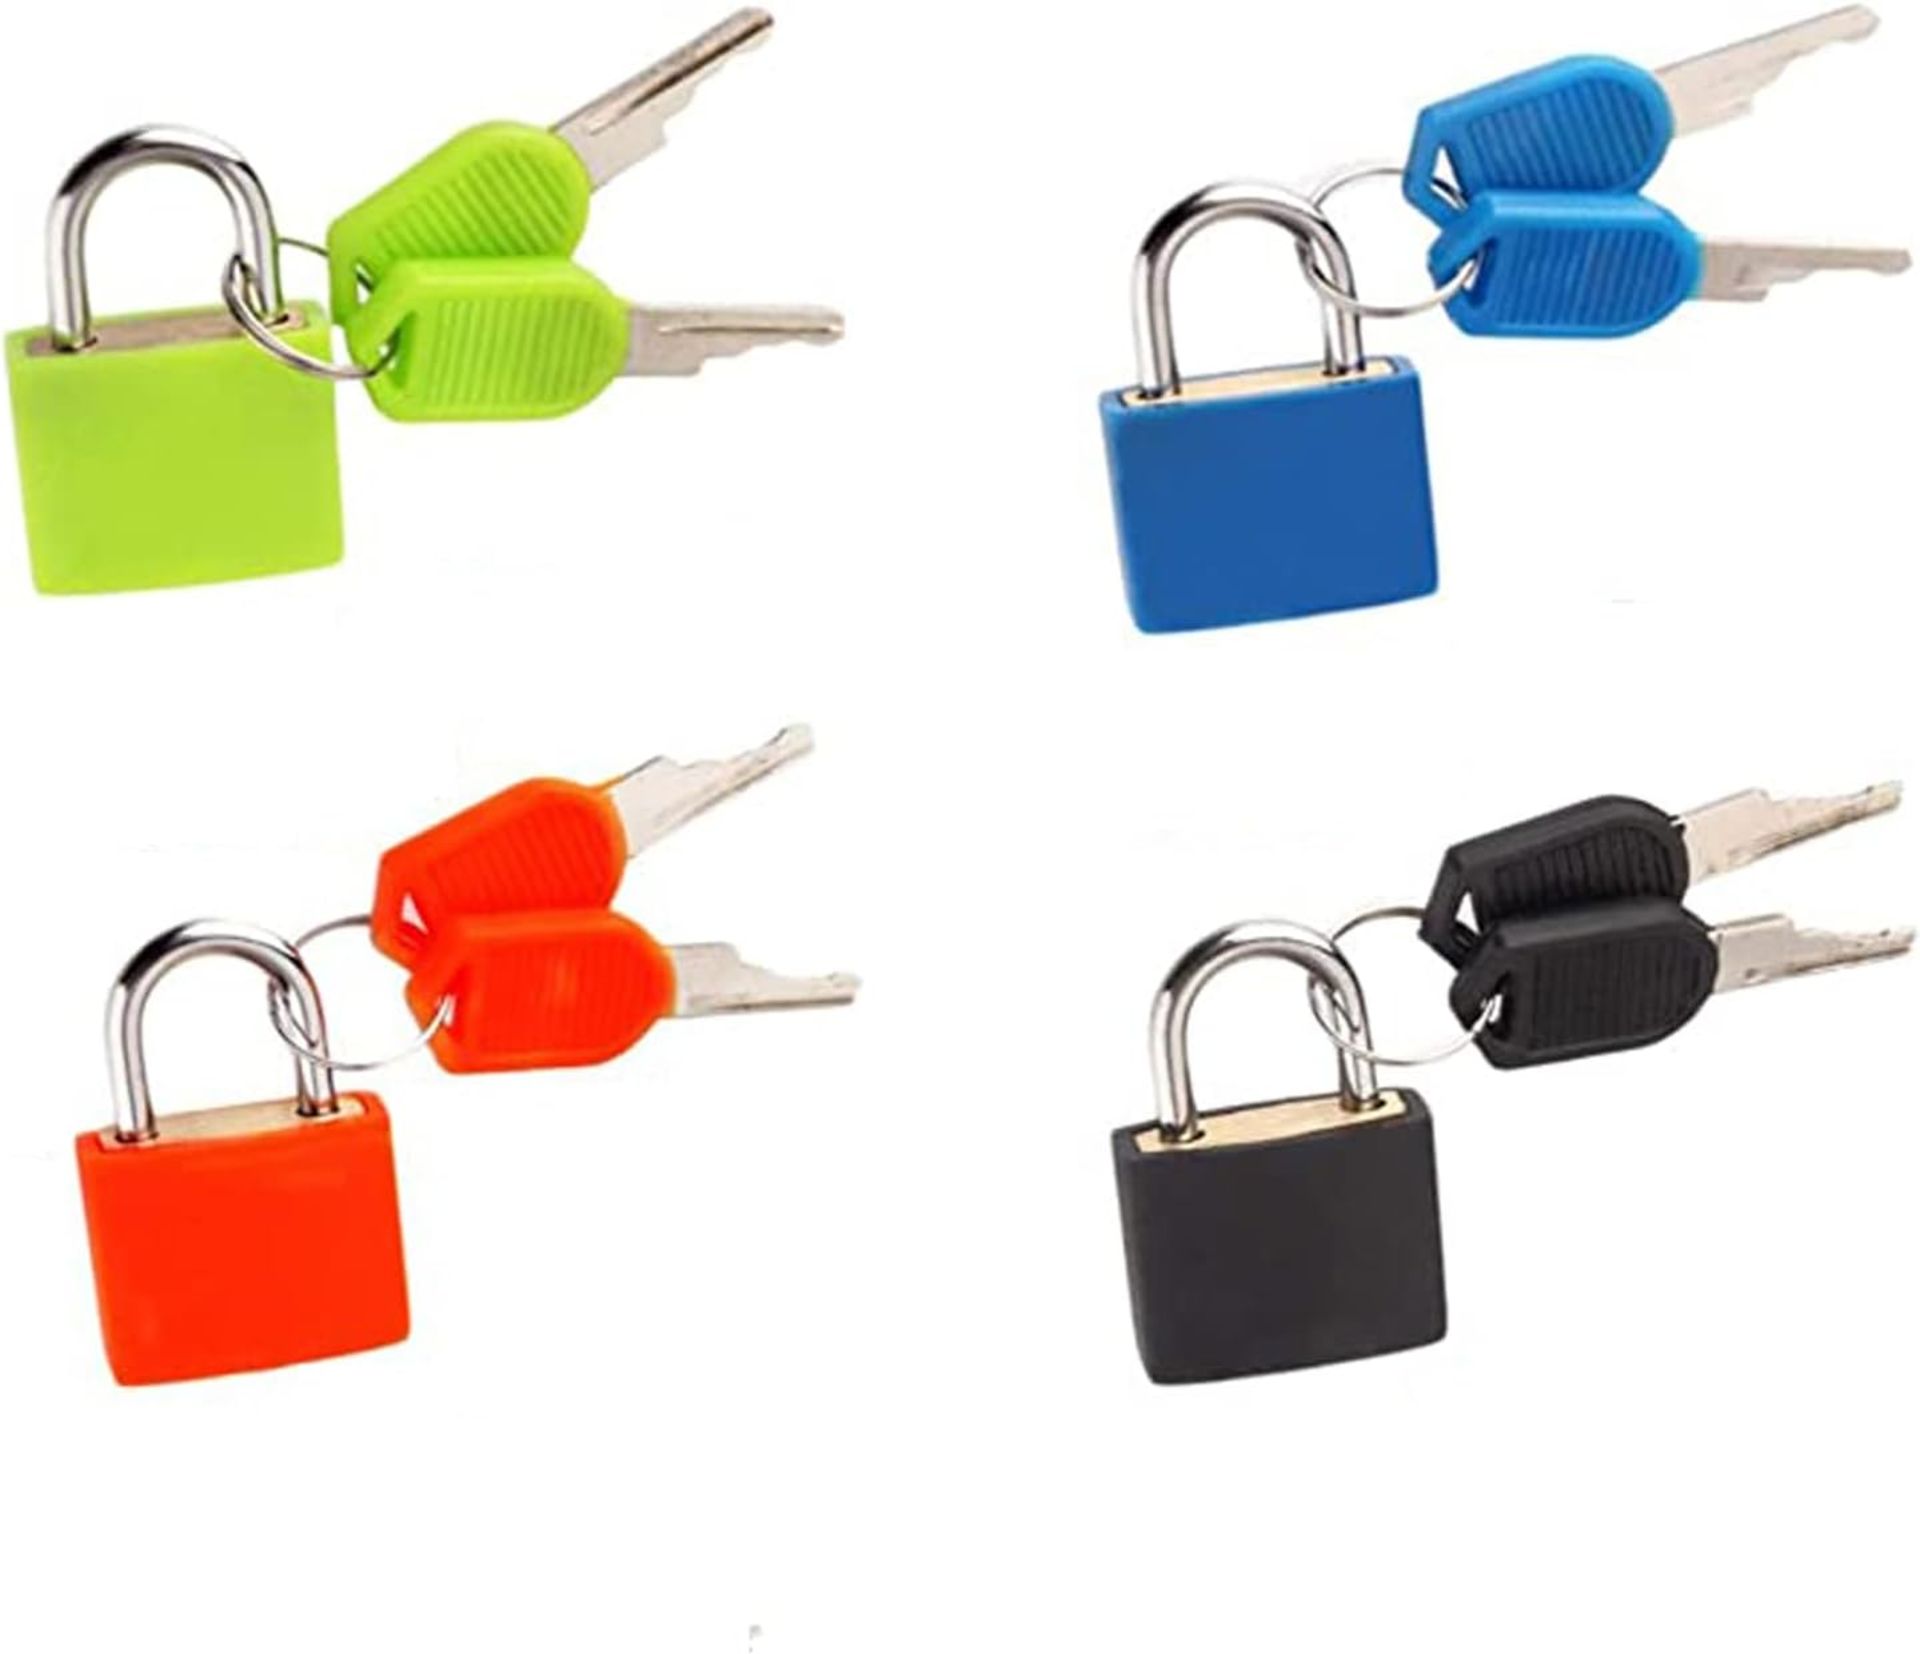 RRP £180 Lot of 30 x Lansonee 4 Pcs Suitcase Locks with Keys, Small Padlocks Luggage Locks Padlocks